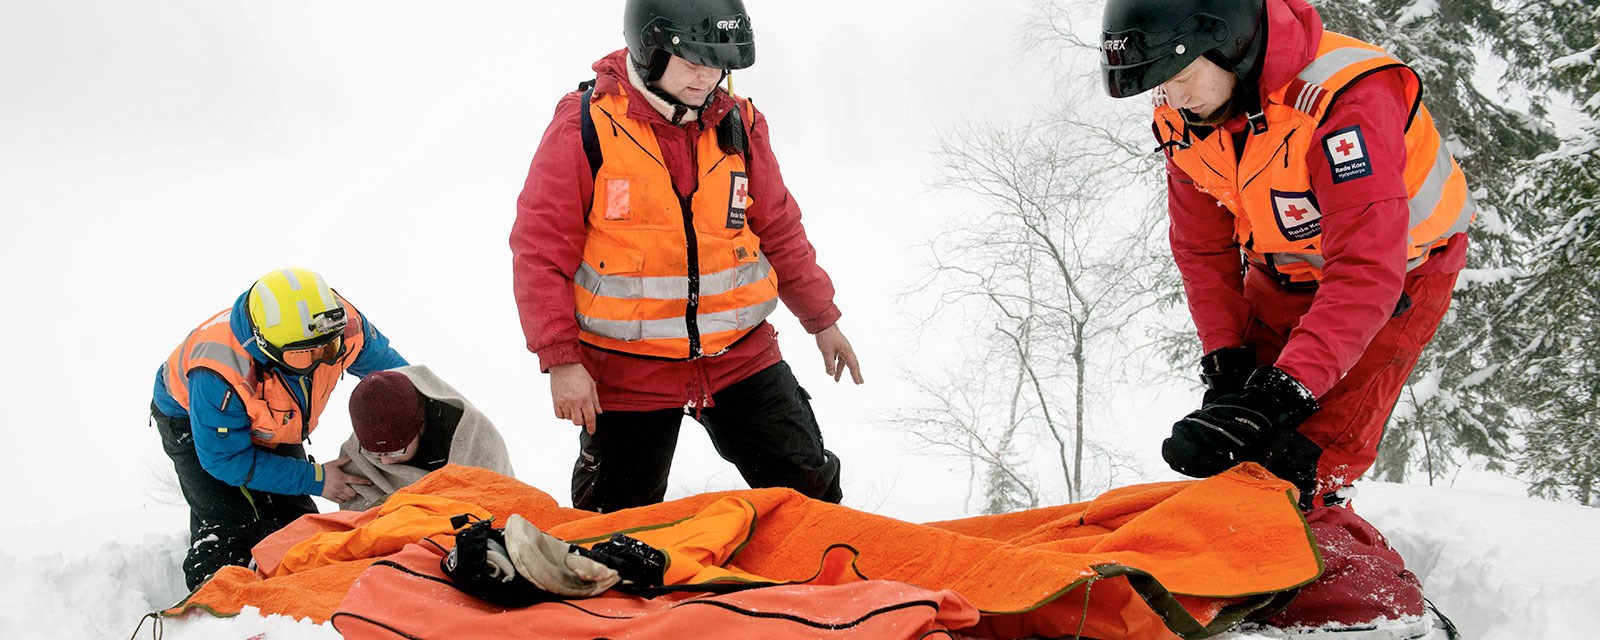 Vinterbilde med hjelpekorpsmannskap på redningsøvelse